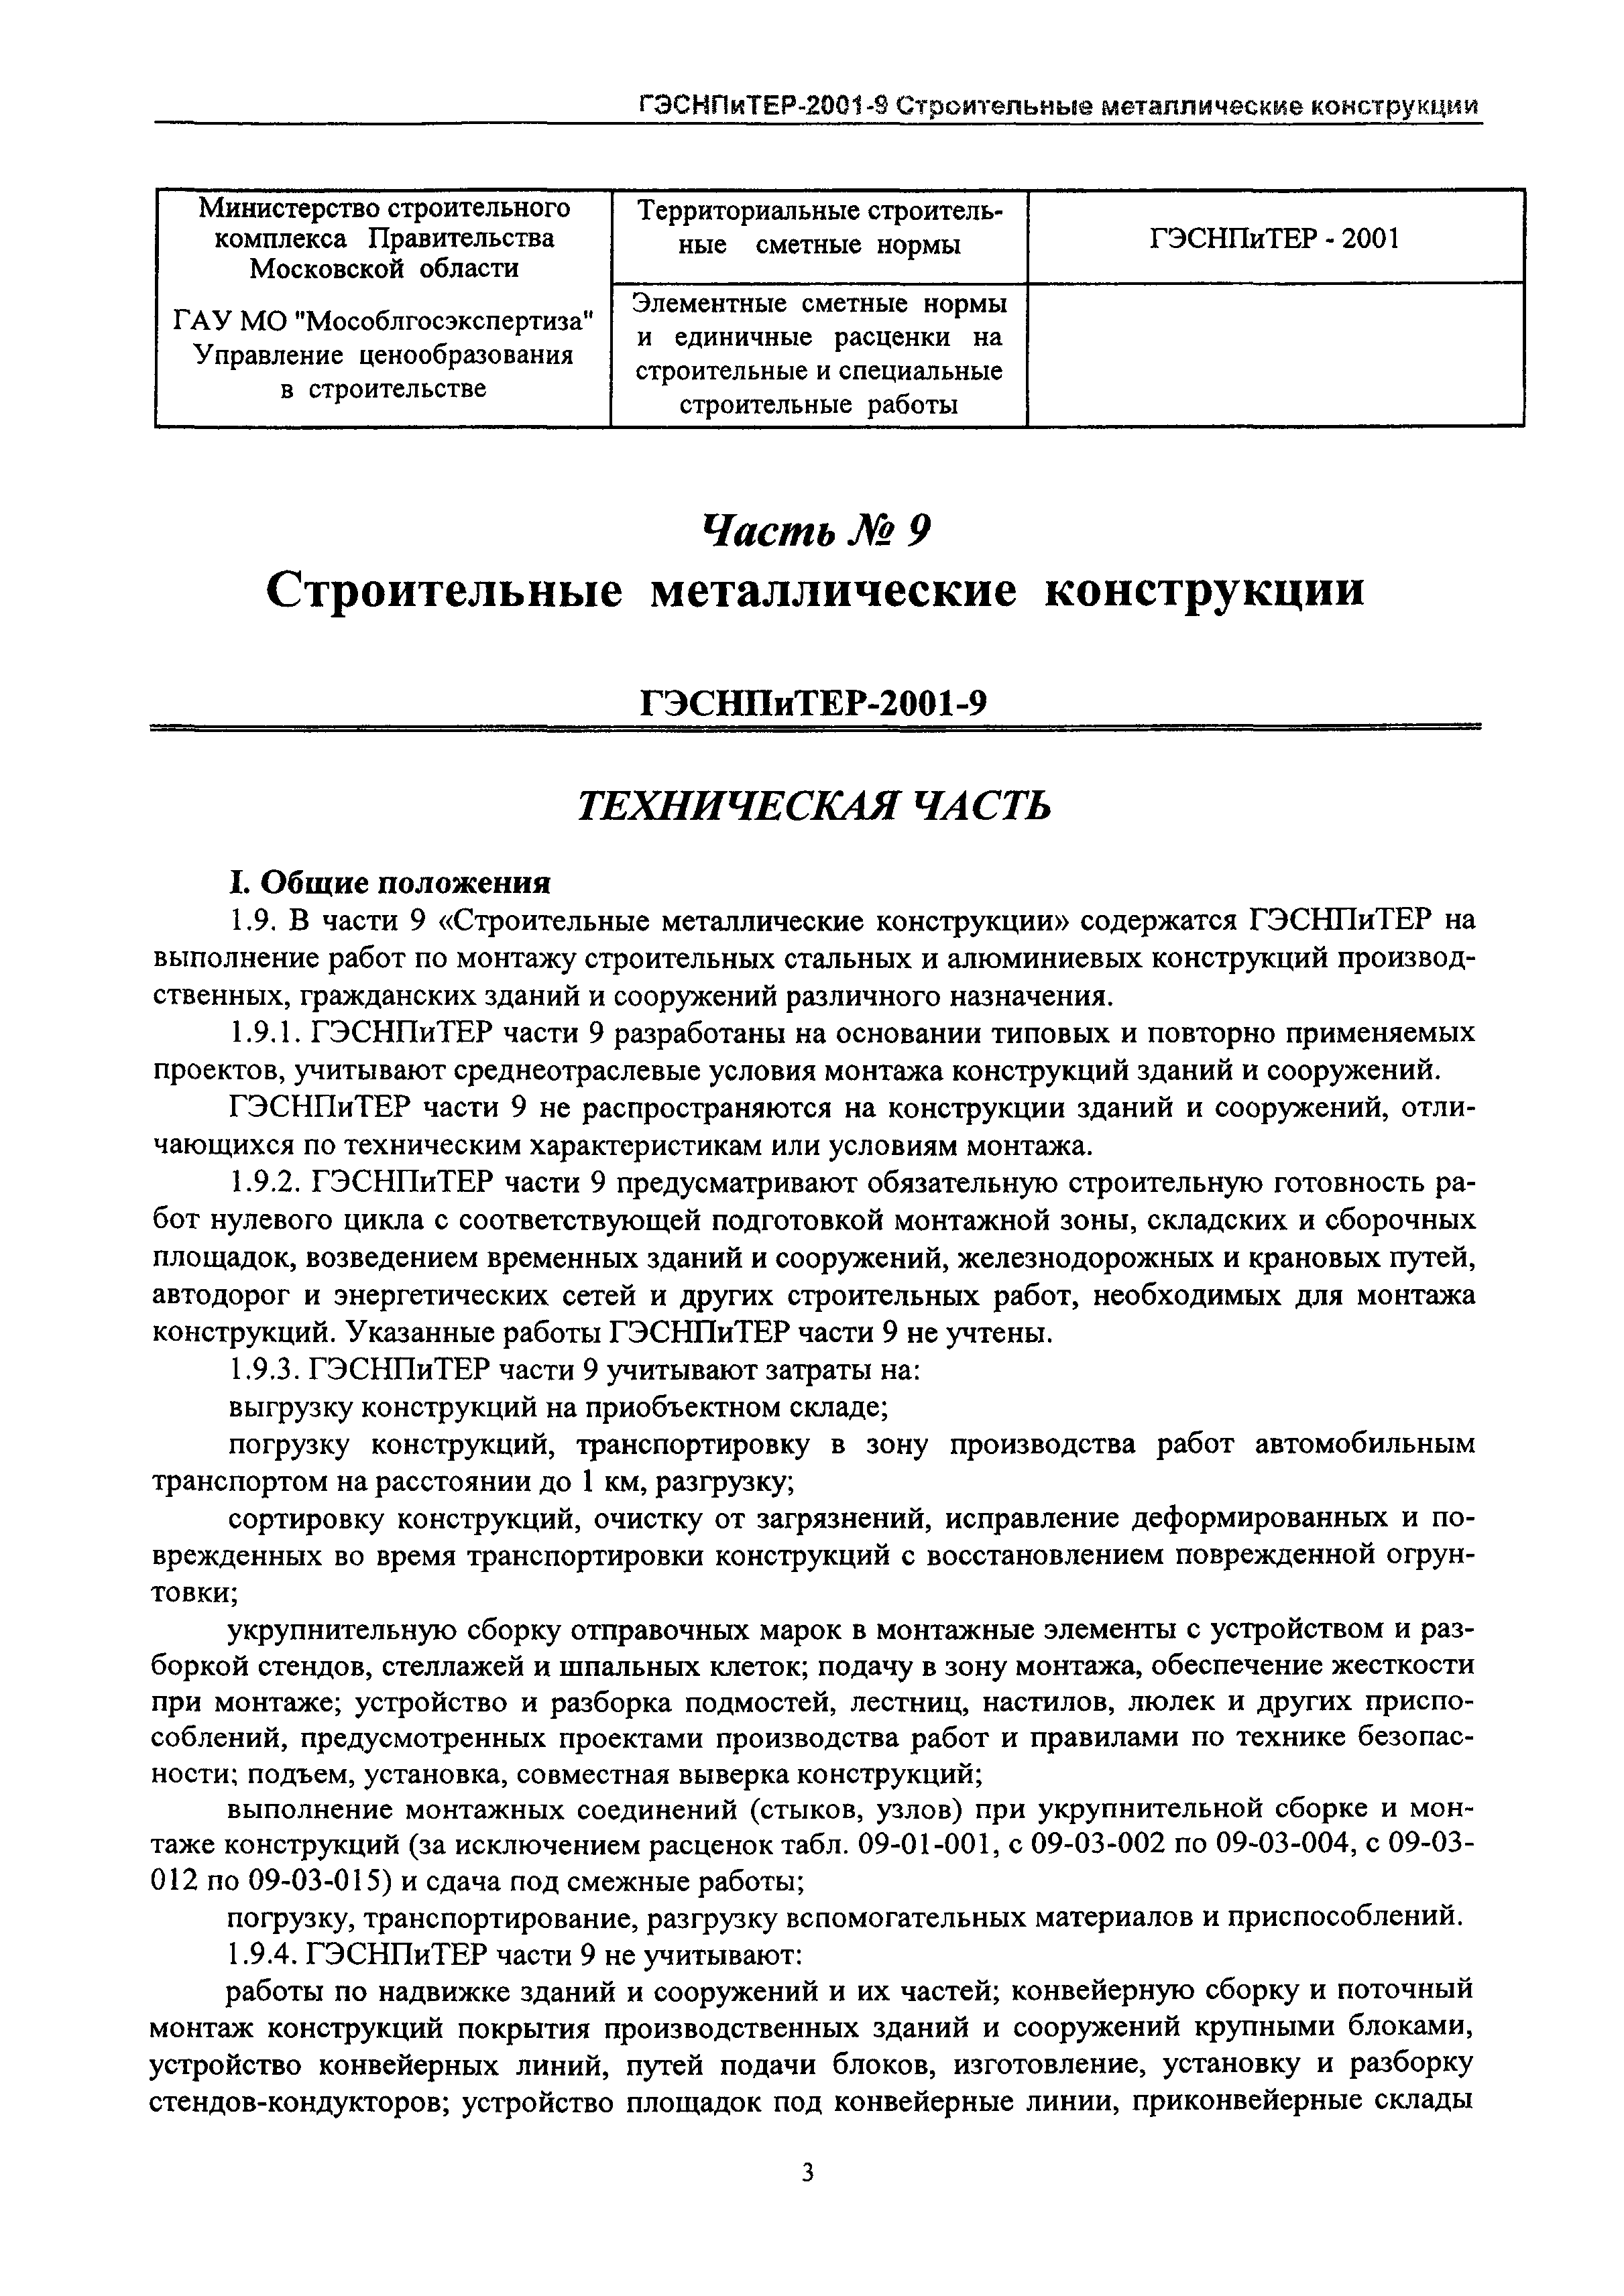 ГЭСНПиТЕР 2001-9 Московской области